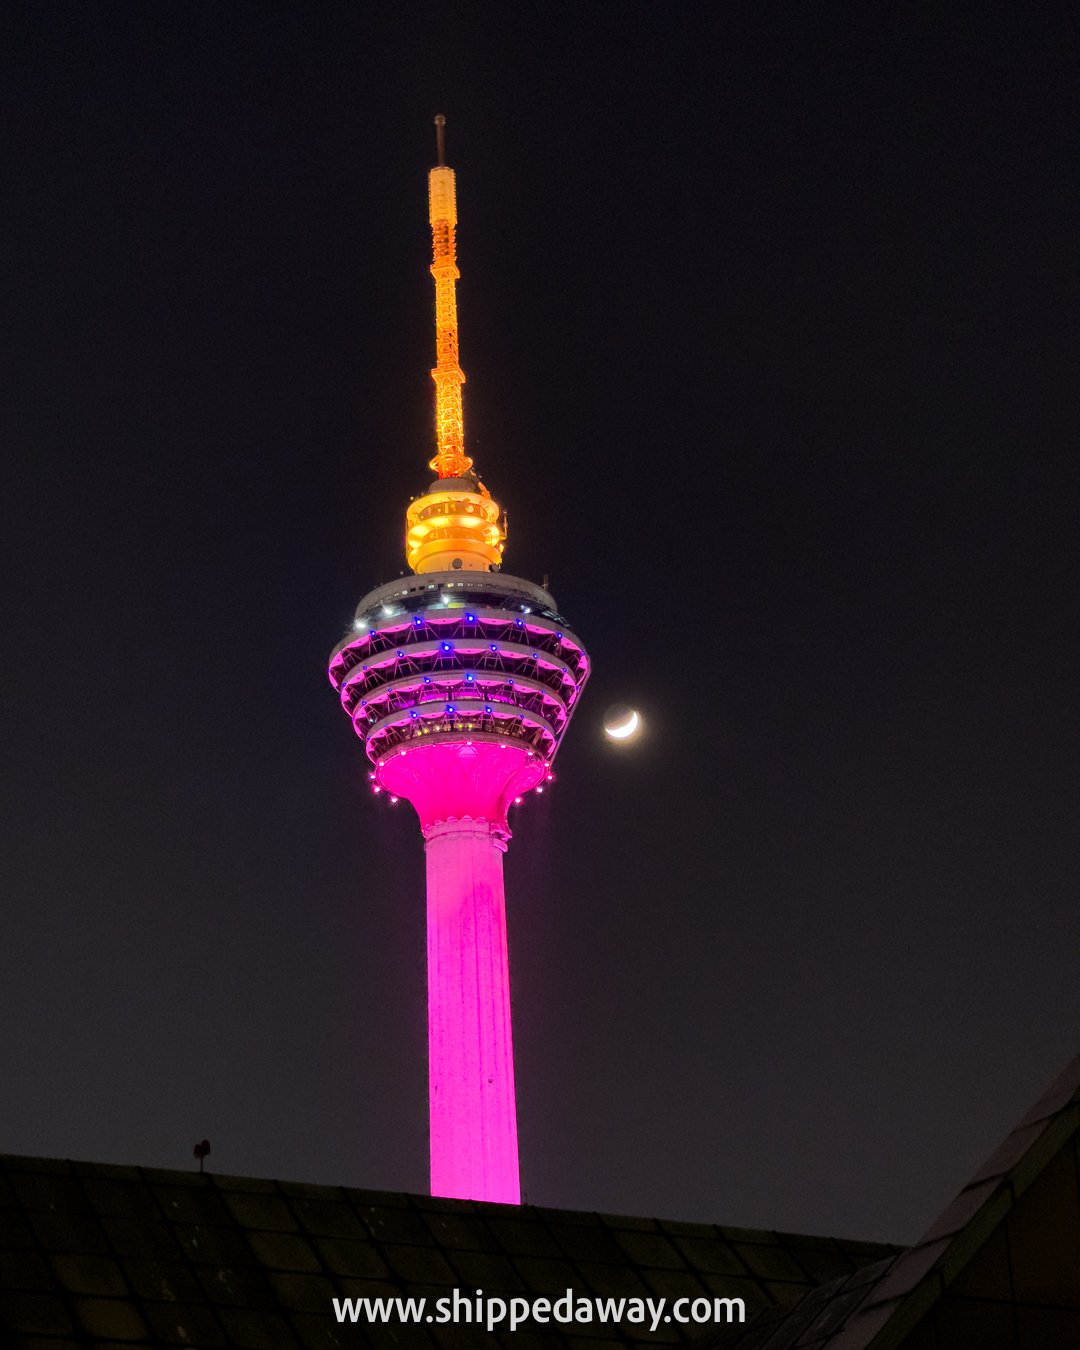 Menara KL Tower at night, Kuala Lumpur